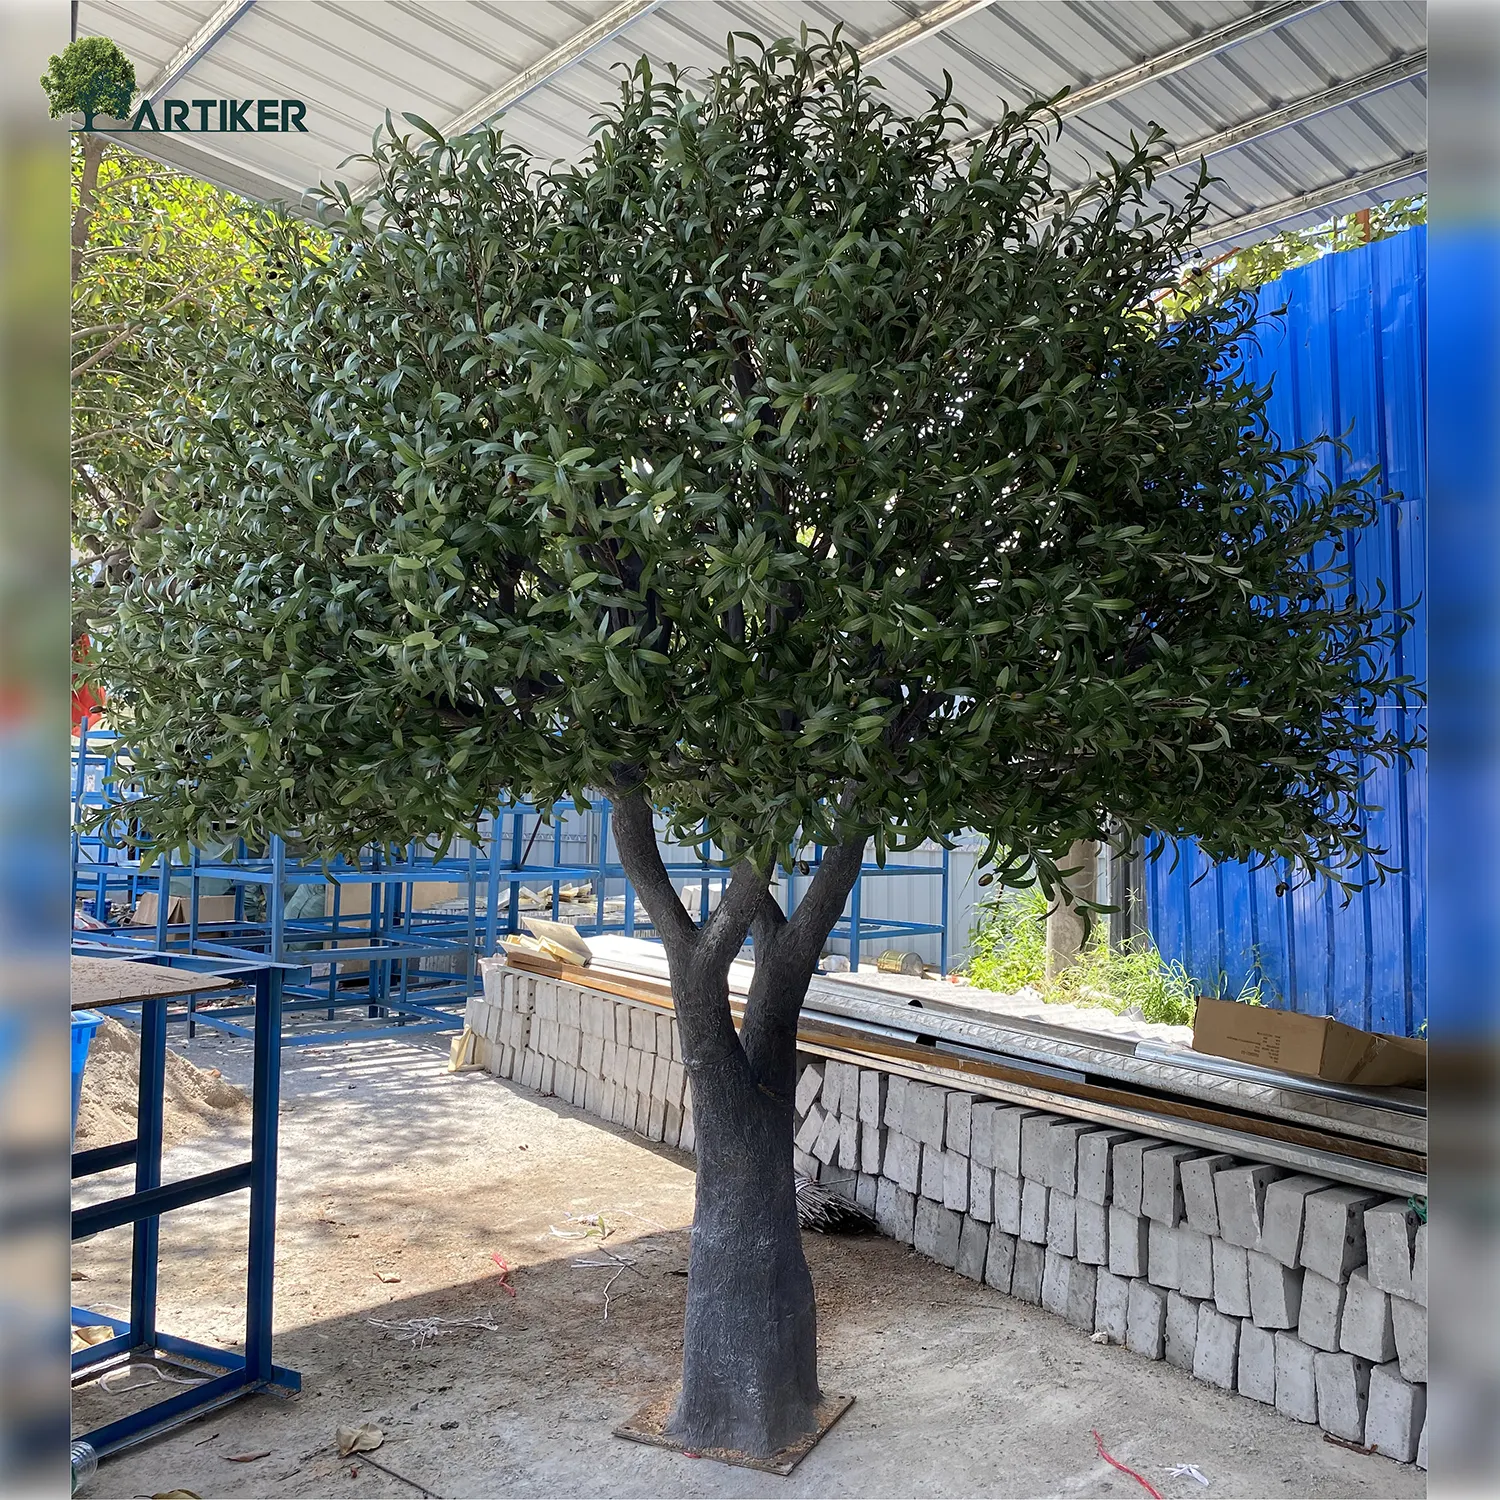 نباتات صناعية كبيرة, نباتات صناعية كبيرة 6ft اسبانيا olea europaea زخرفة البلاستيك فاكهة wayfair الشركات المصنعة للوجه شجرة الزيتون فو